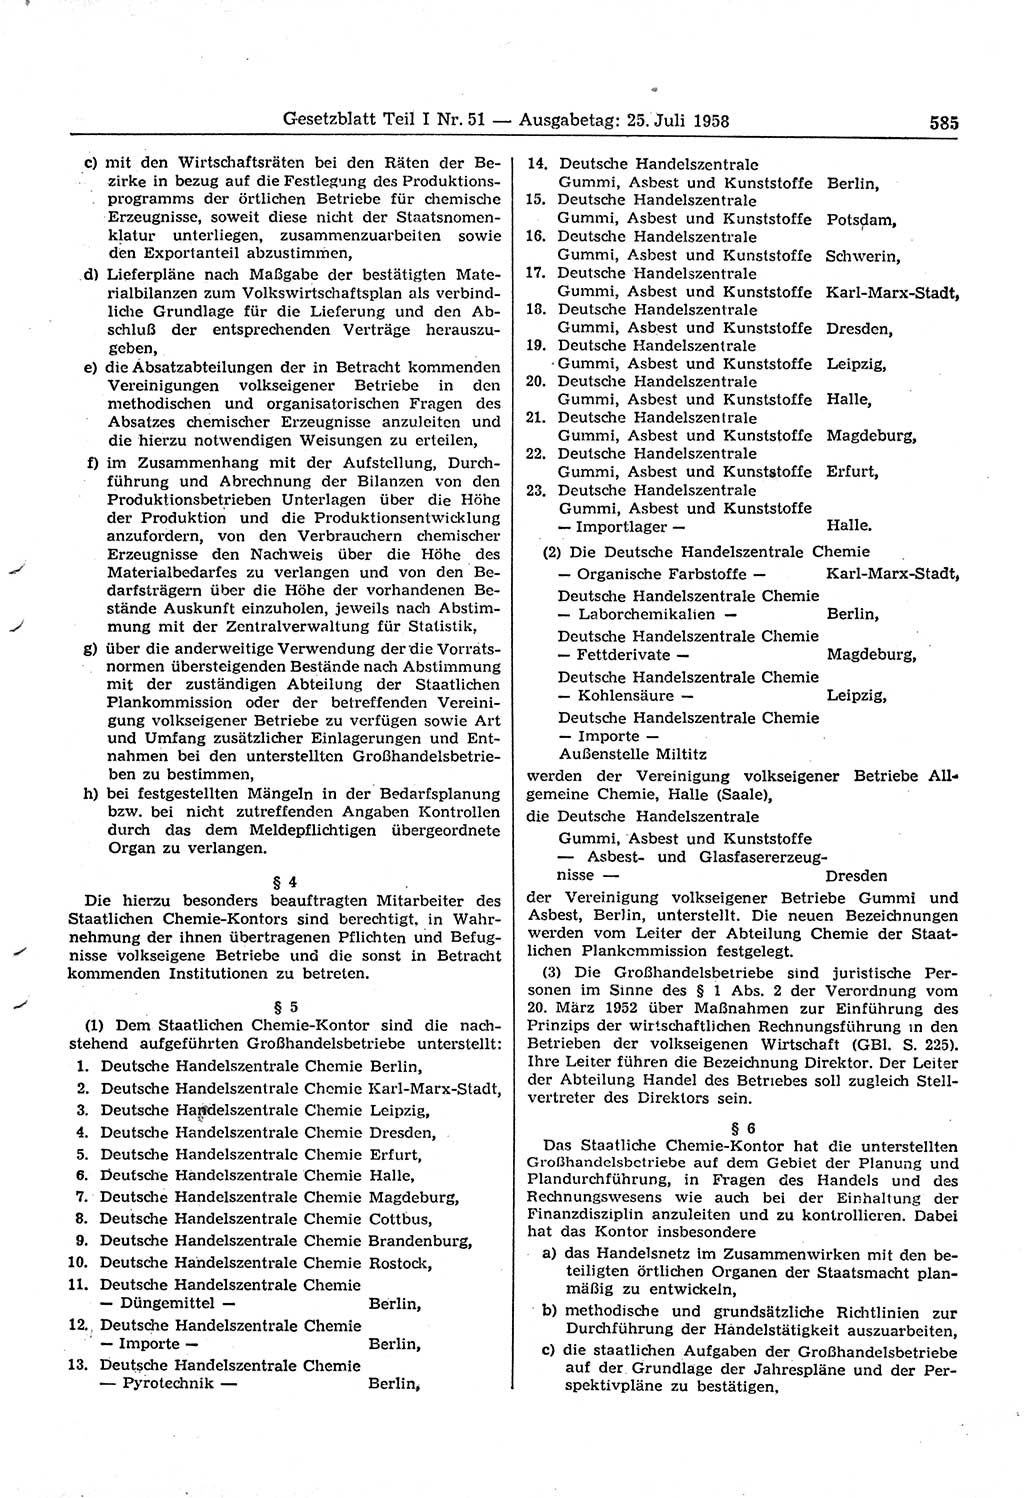 Gesetzblatt (GBl.) der Deutschen Demokratischen Republik (DDR) Teil Ⅰ 1958, Seite 585 (GBl. DDR Ⅰ 1958, S. 585)